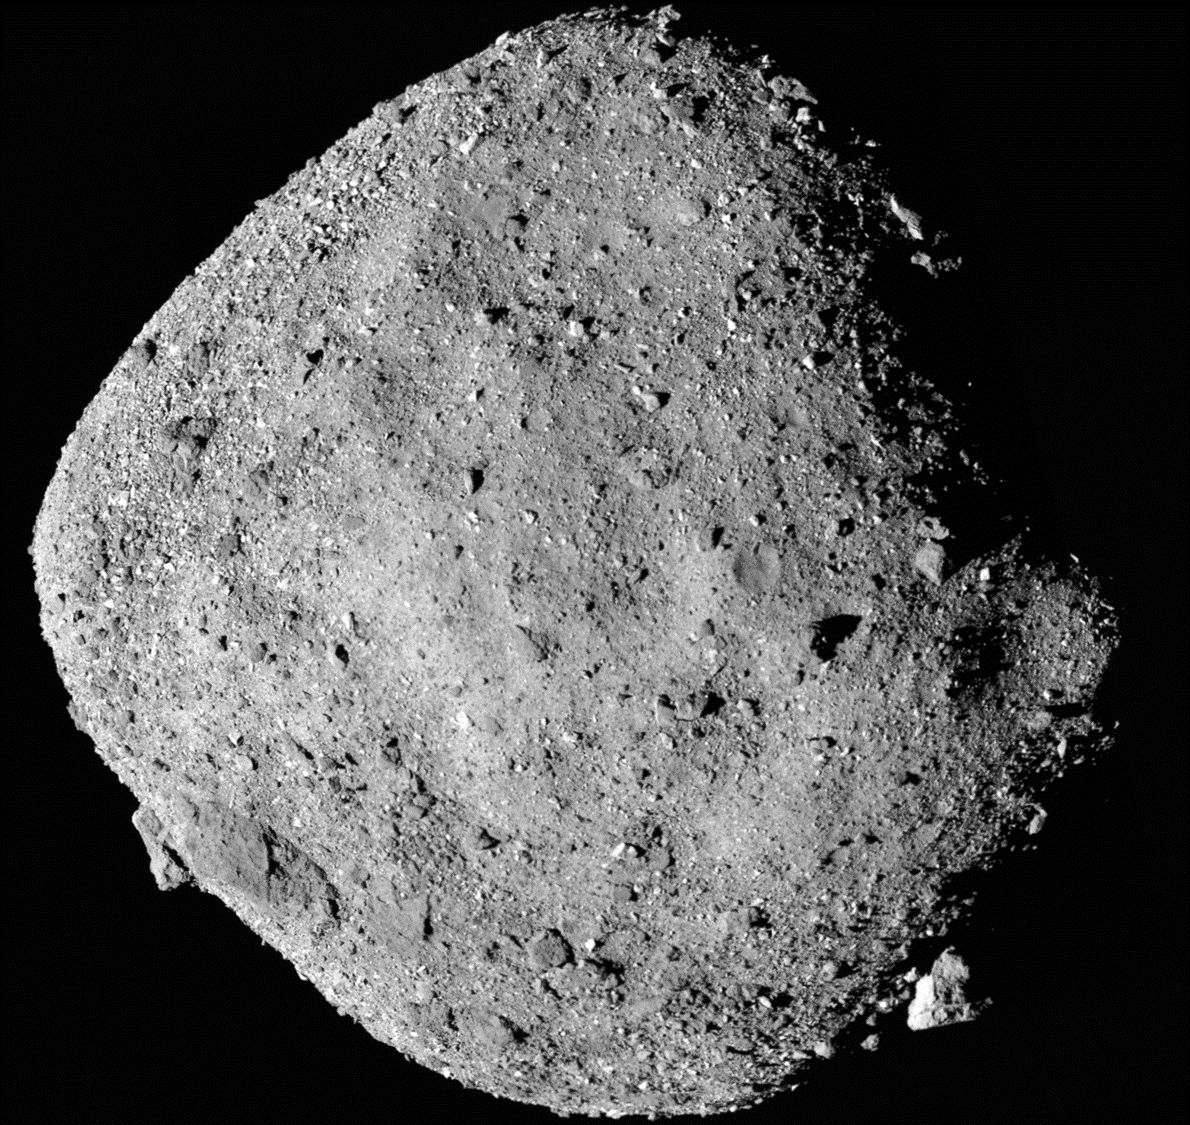 Asteroid Bennu image from OSIRIS-REx